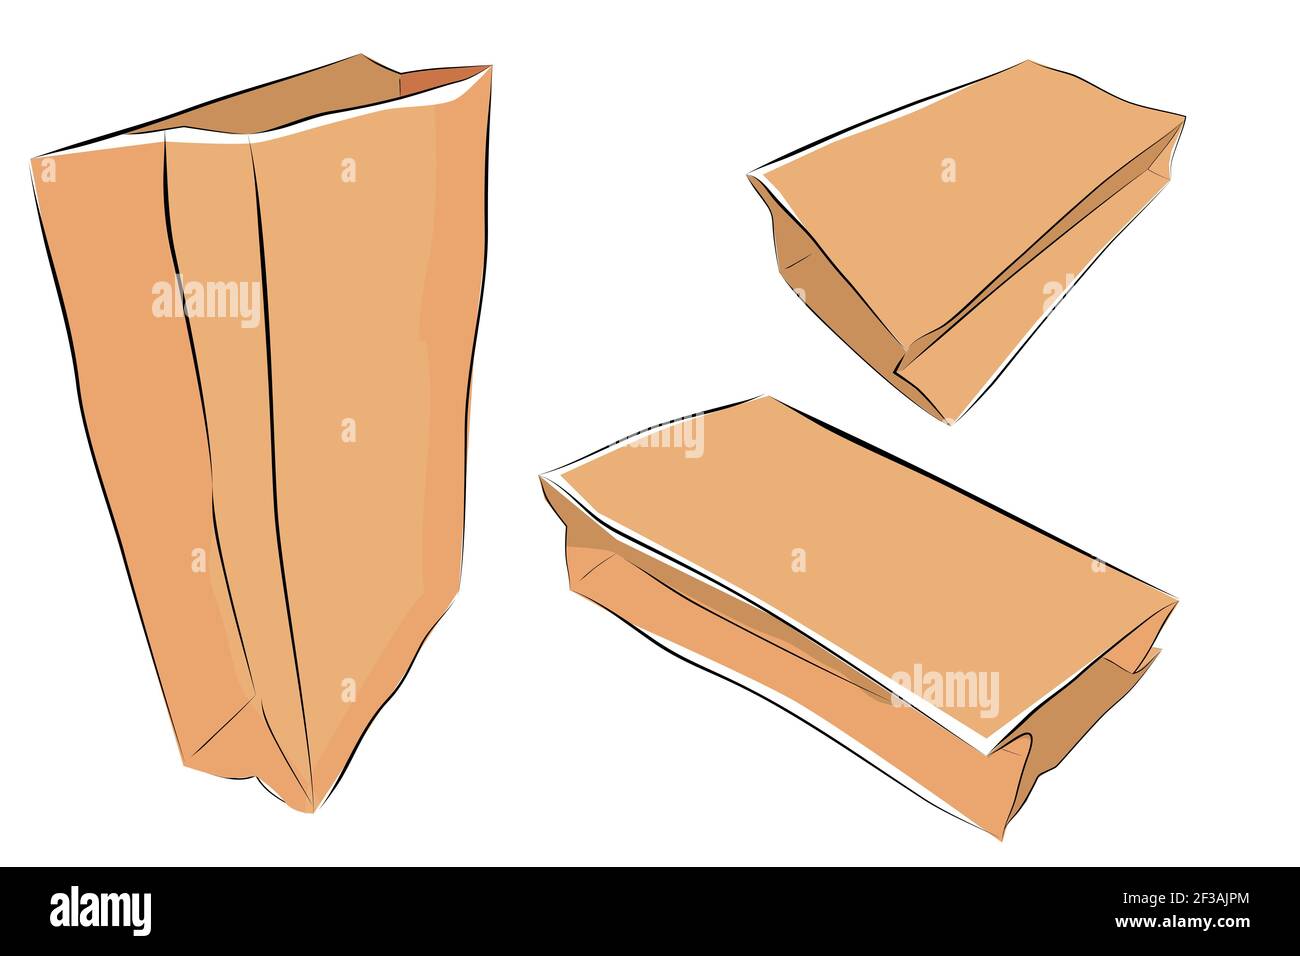 Semplice disegno a mano marrone vettoriale schizzo di sacchetto di carta,  coperchio chiuso, 3 prospettive e stile, isolato su bianco Immagine e  Vettoriale - Alamy